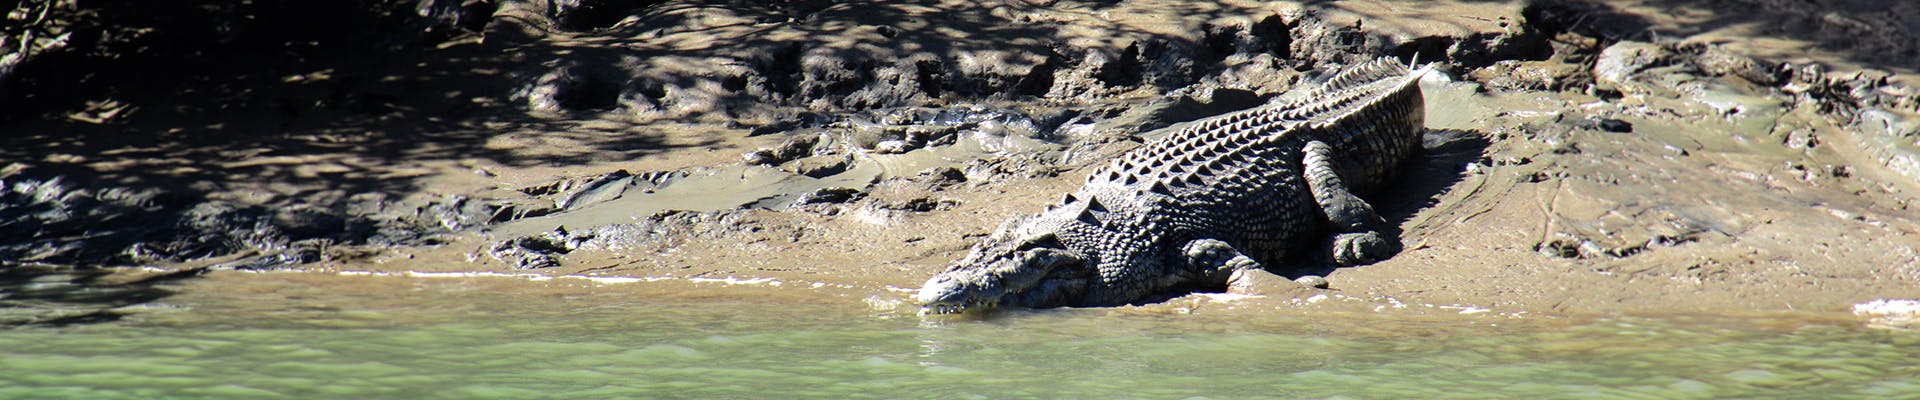 Crocodile sitting on a muddy river bank